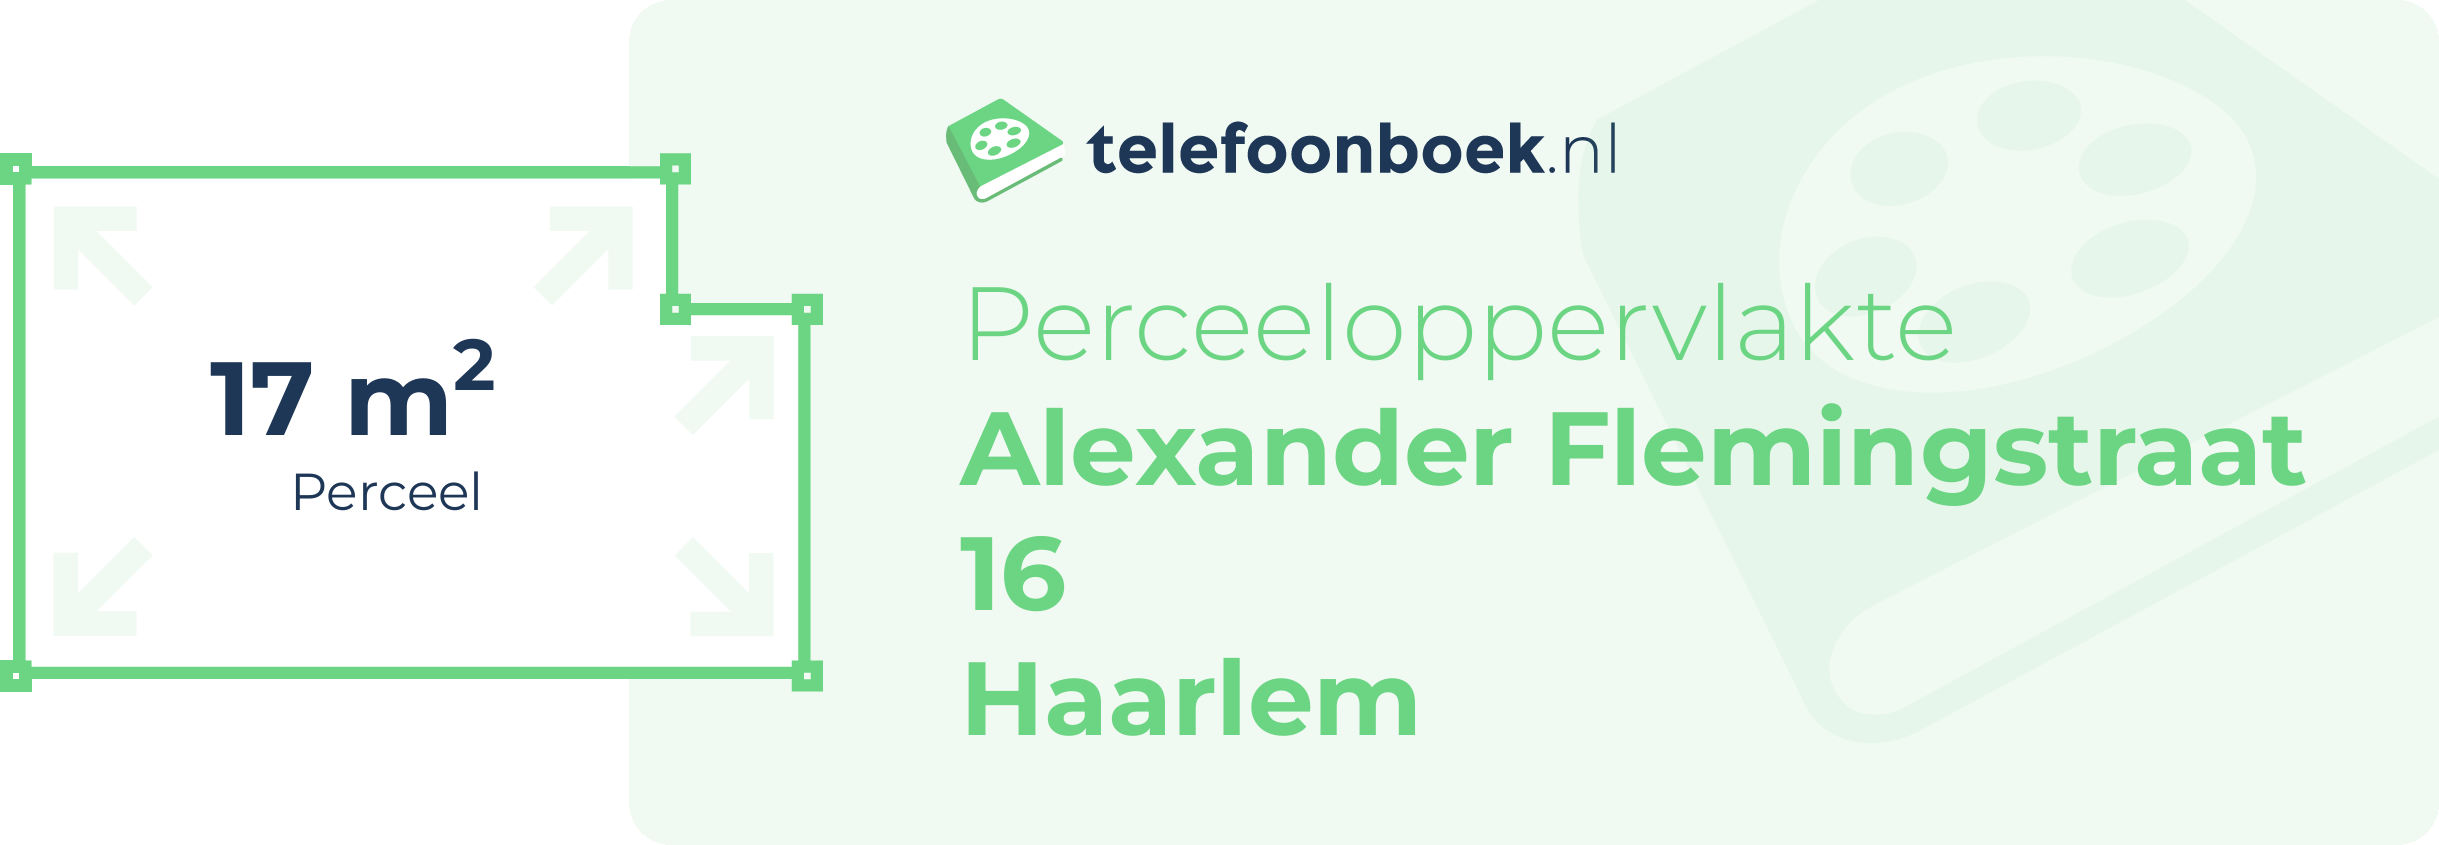 Perceeloppervlakte Alexander Flemingstraat 16 Haarlem